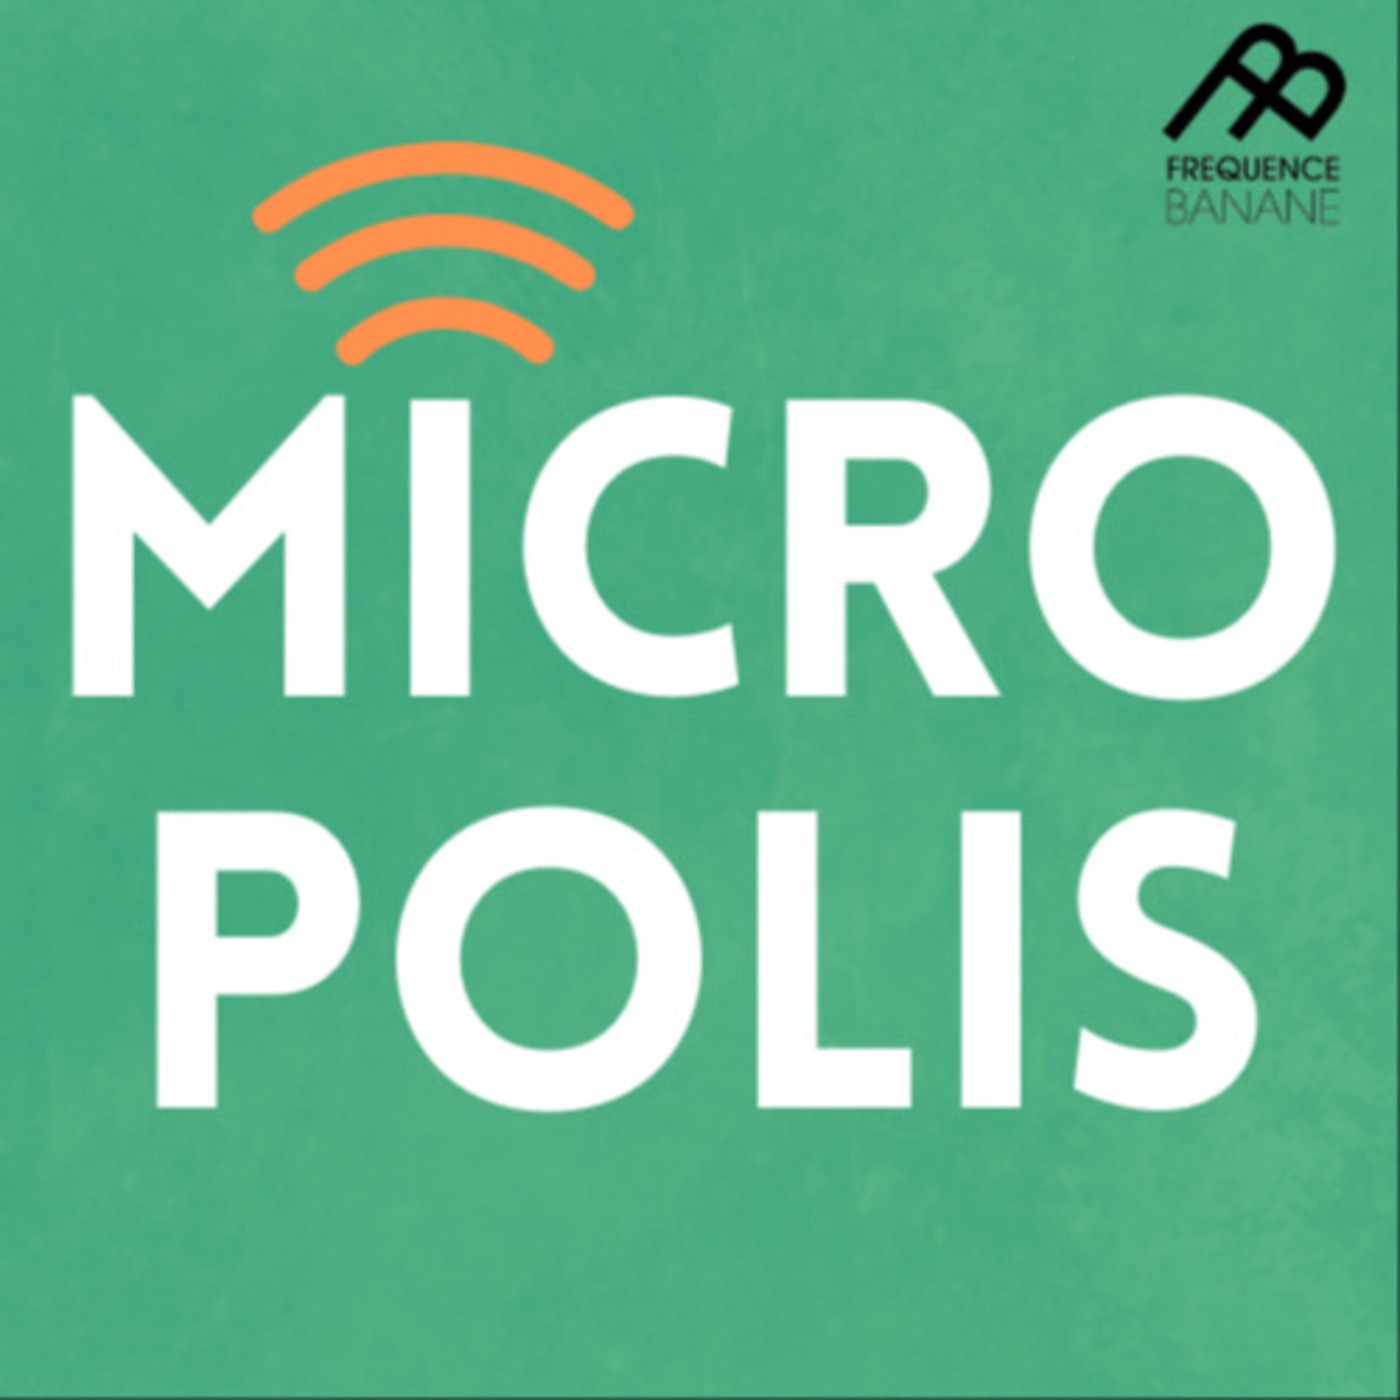 Micropolis – Une journée typique d’un·e étudiant·e avec les Banales - 23.11.2020